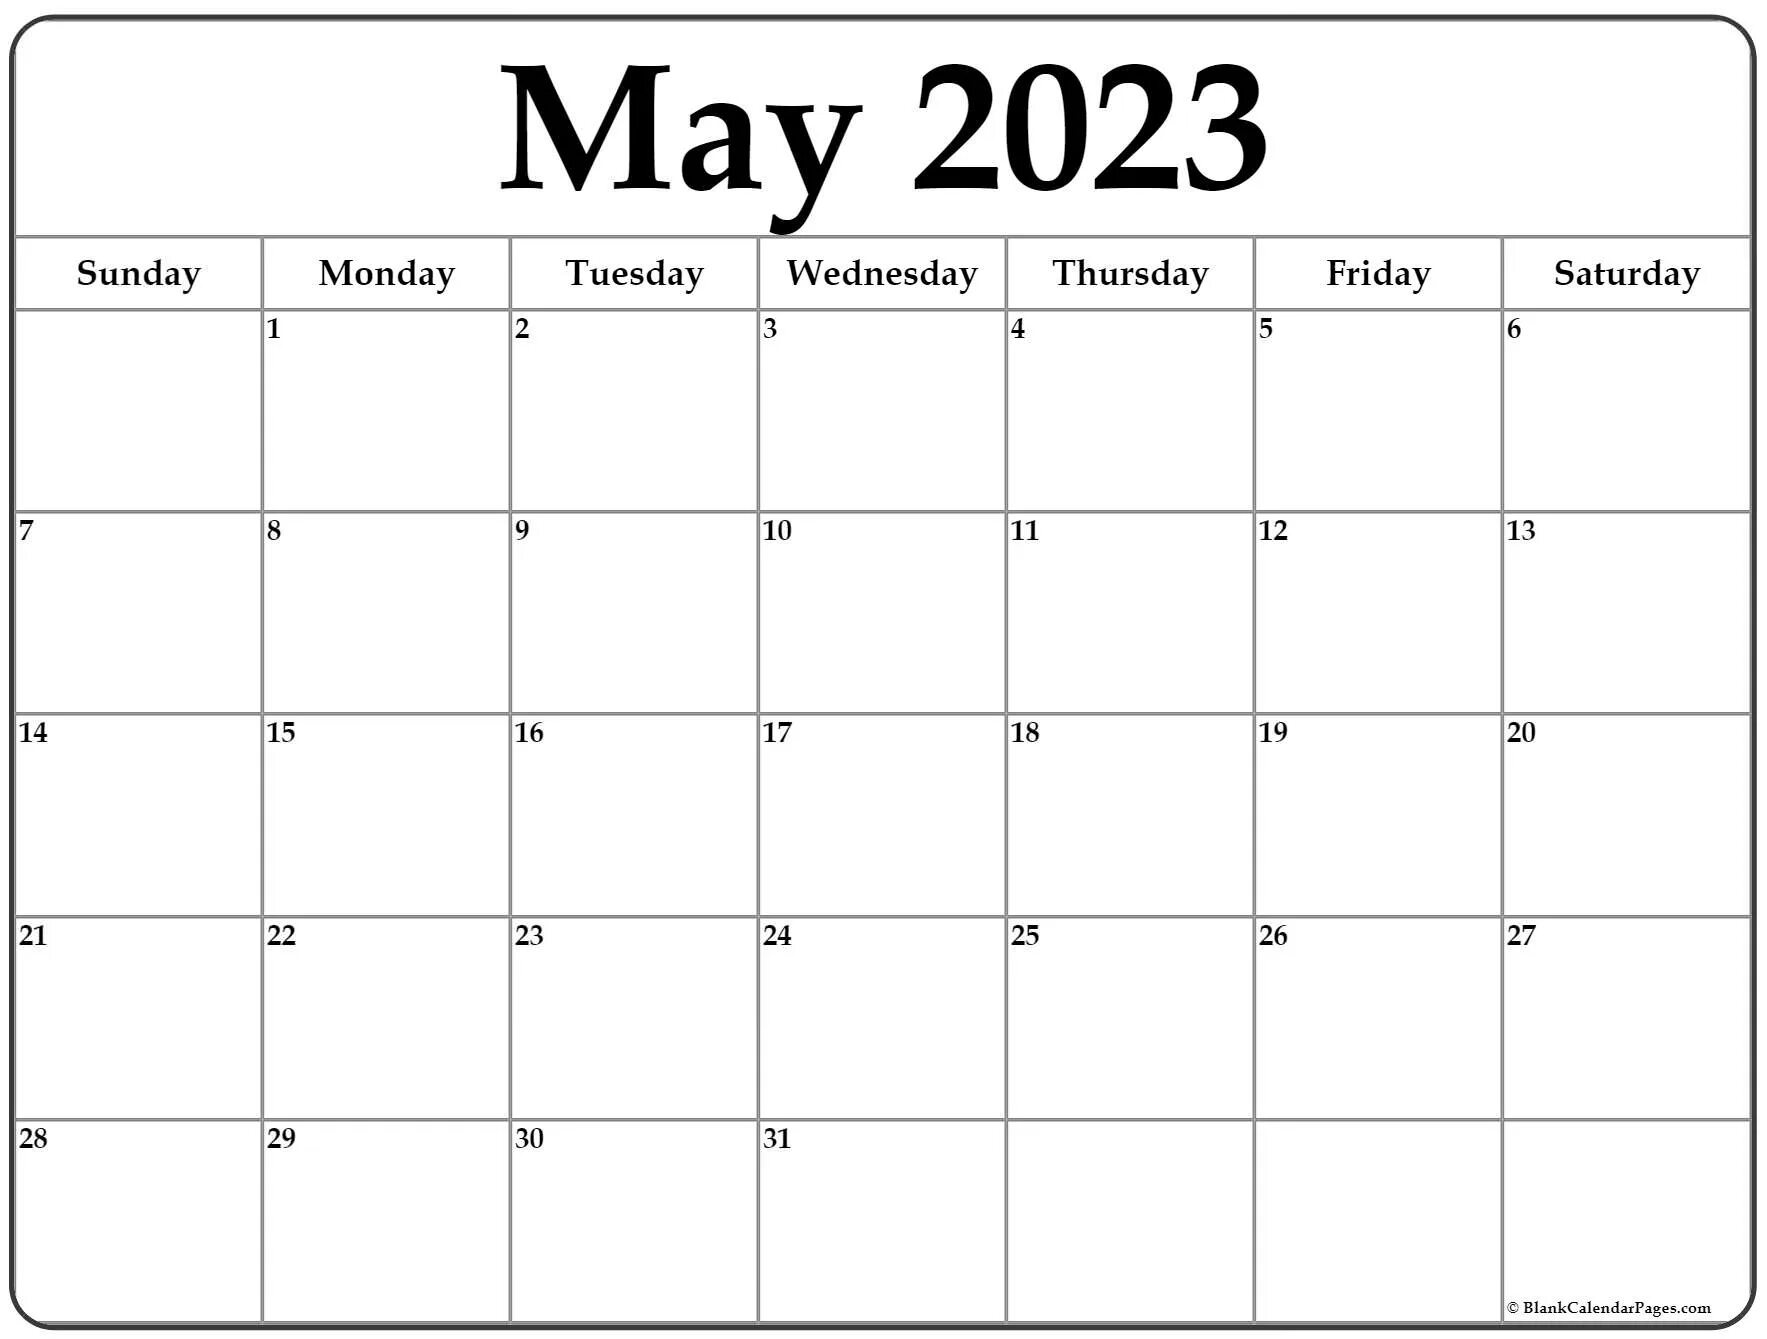 Расписание май 2023. Календарь май 2023. Календарь на май 2023 года. Календарь октябрь 2023. Календарь на май 2023 с праздниками.